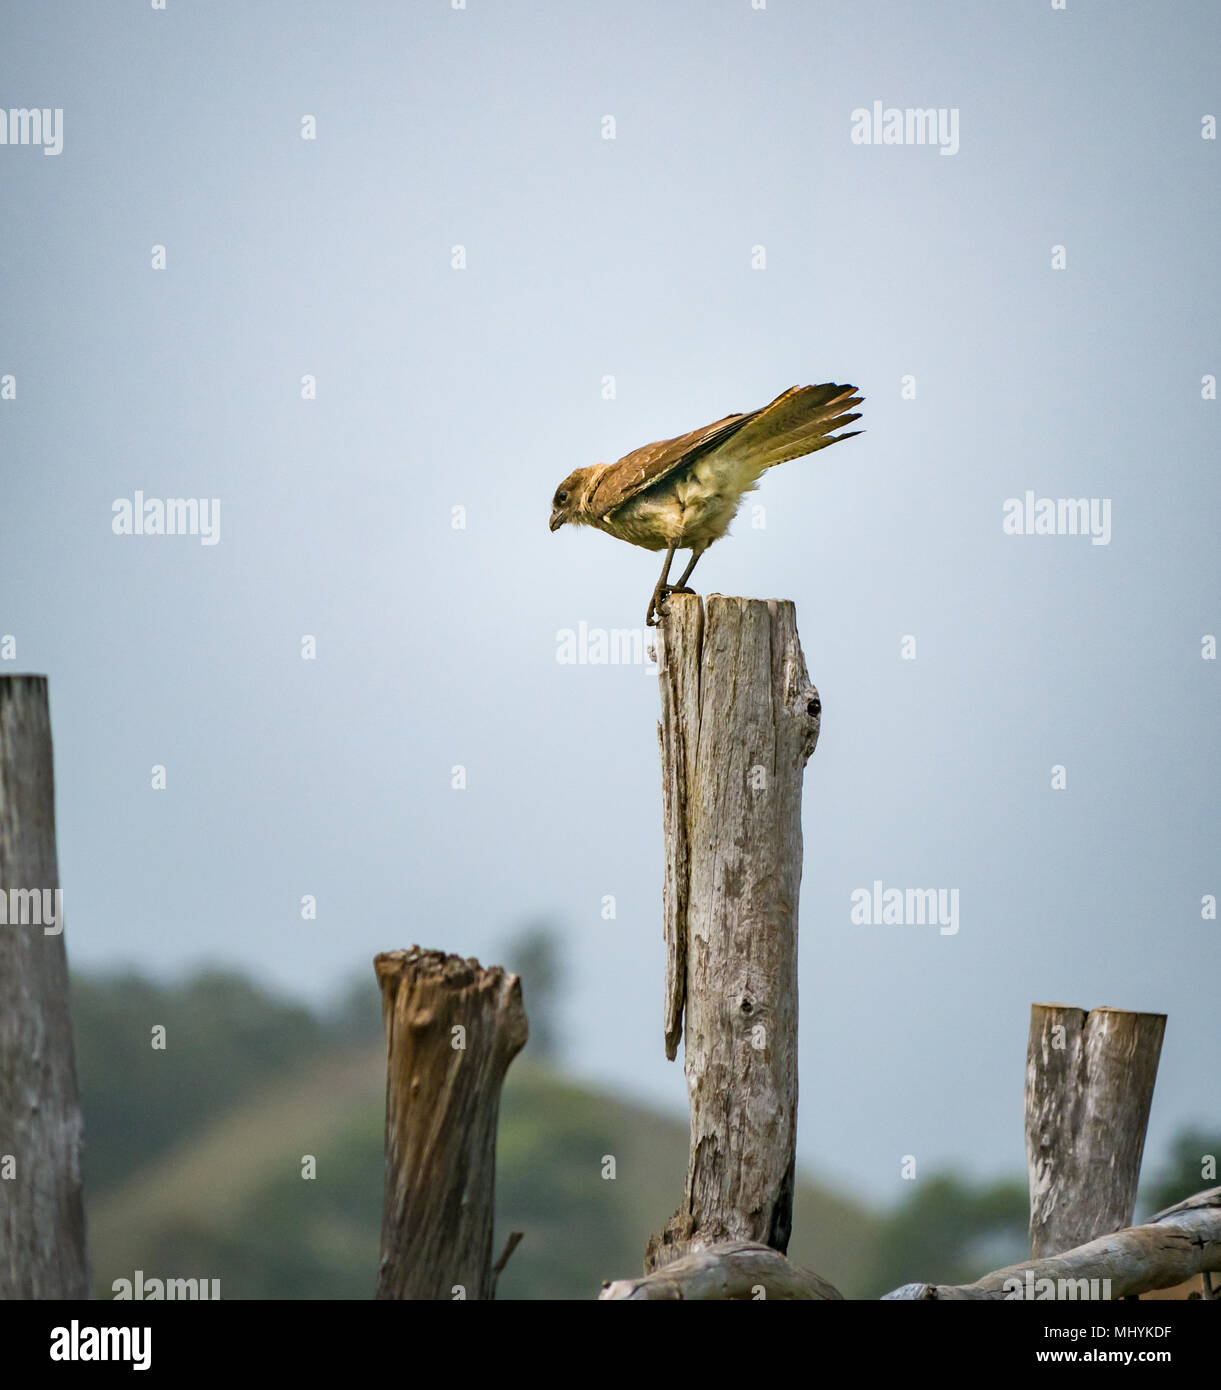 Chimango caracara, Milvago chimango, aves de presa sobre un poste de madera desgastada, Isla de Pascua, Chile, a punto de volar Foto de stock